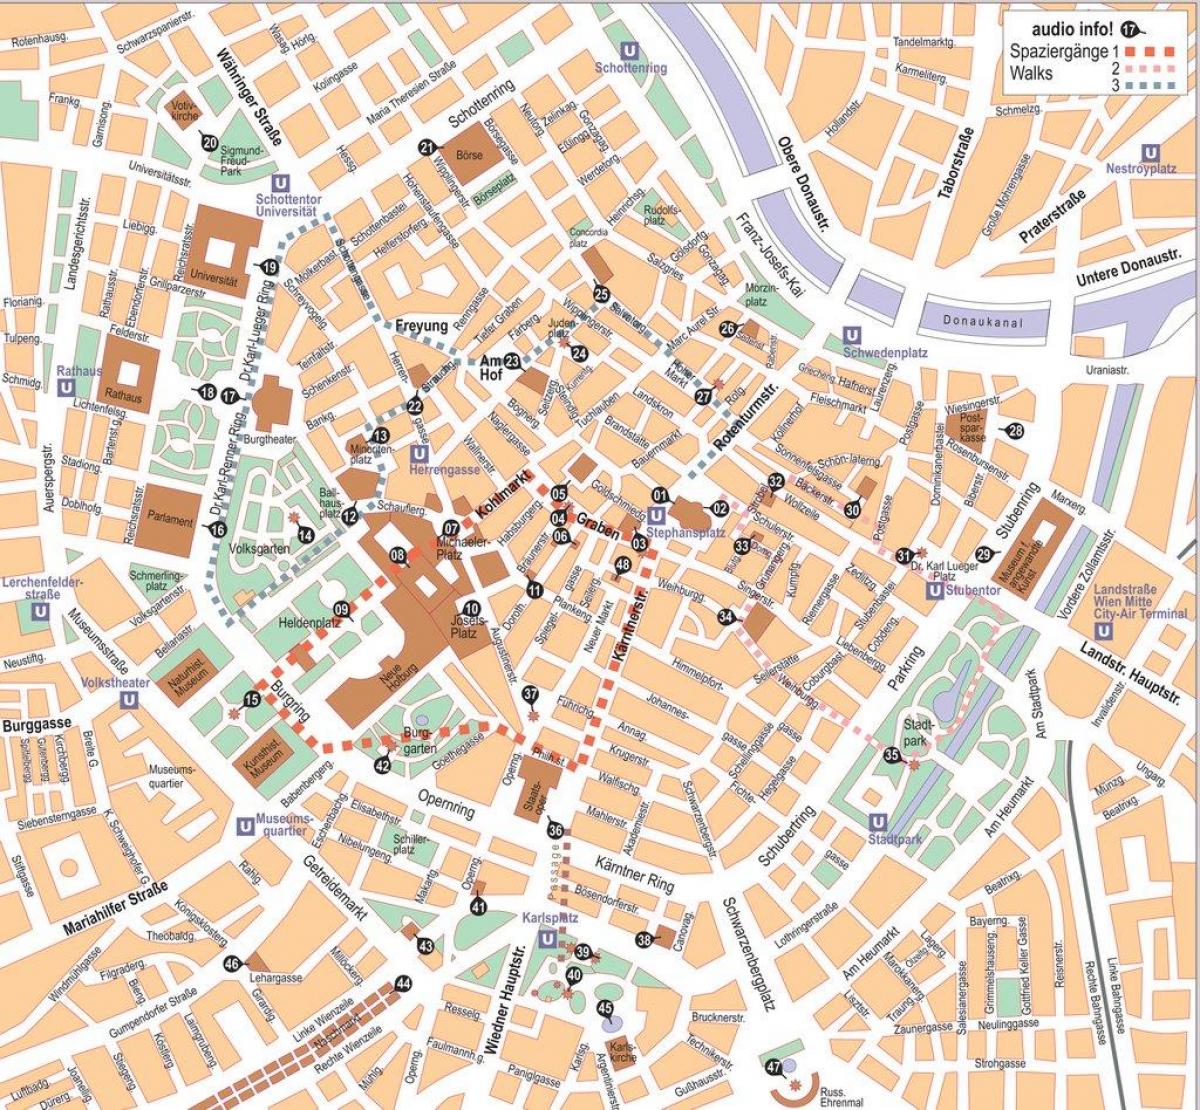 Mapa de Viena offline cidade